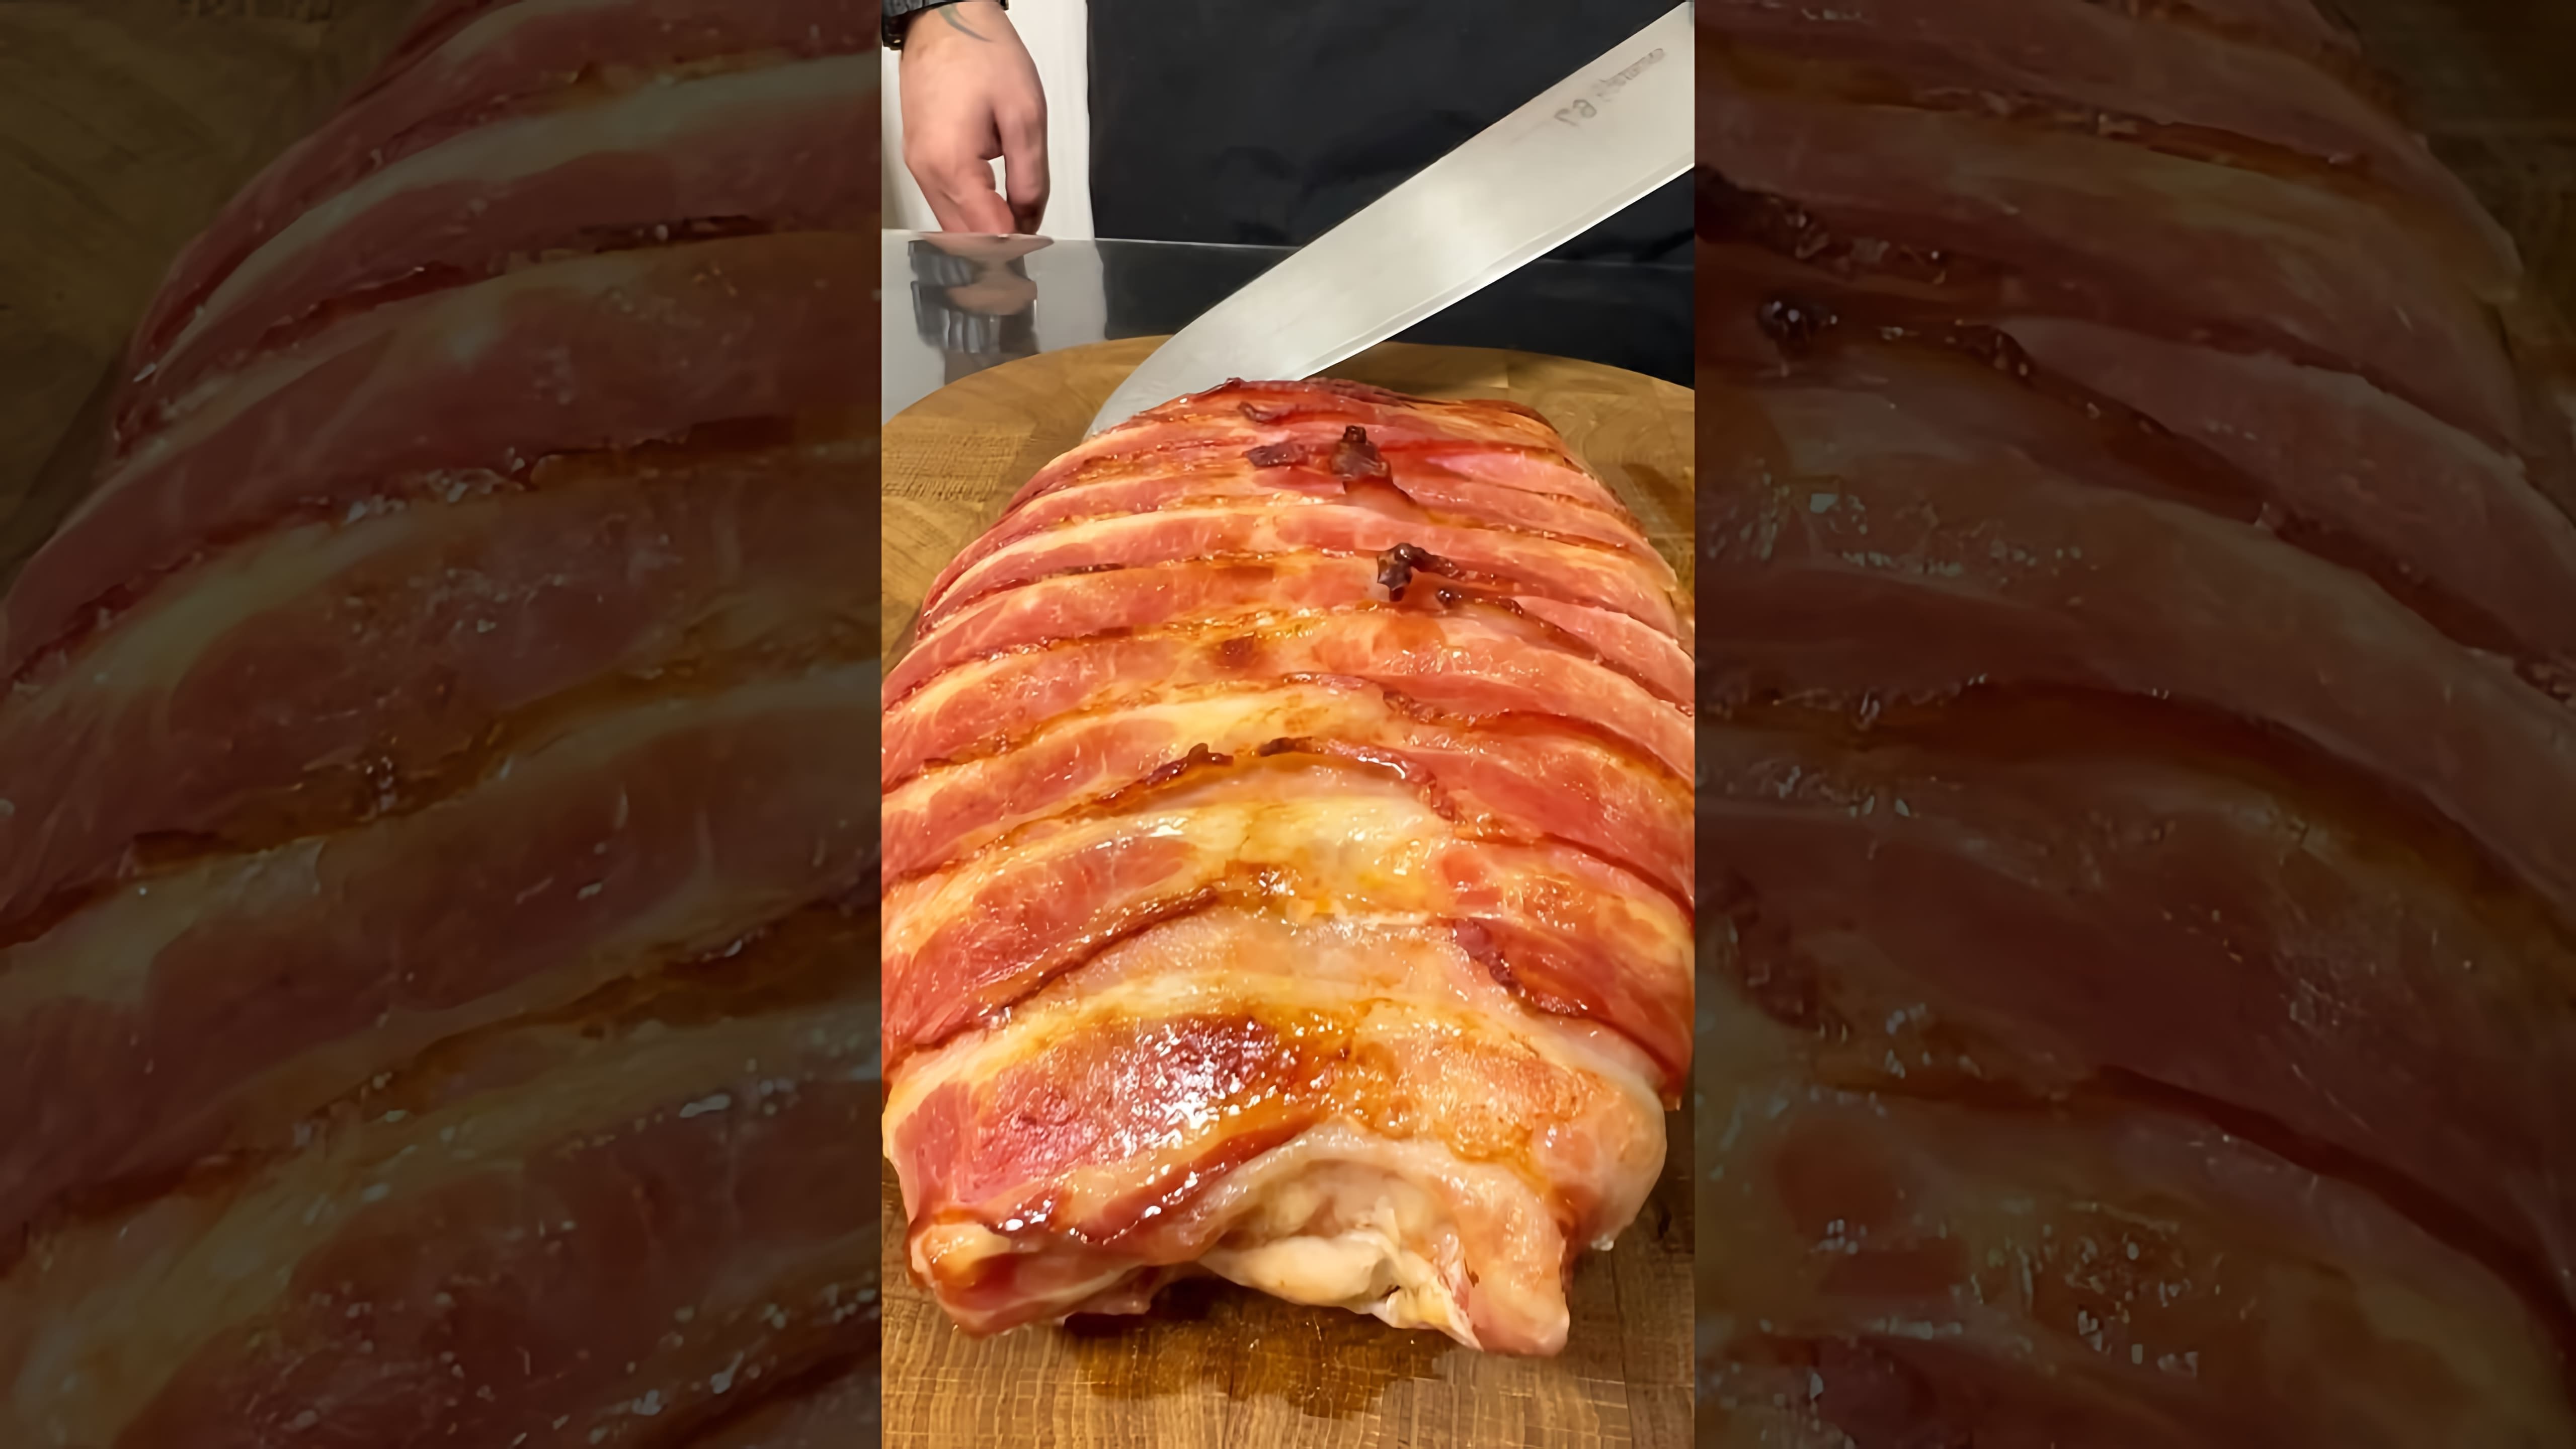 В этом видео демонстрируется процесс приготовления свиной вырезки с использованием сливочного масла, чеснока, соли и аджики